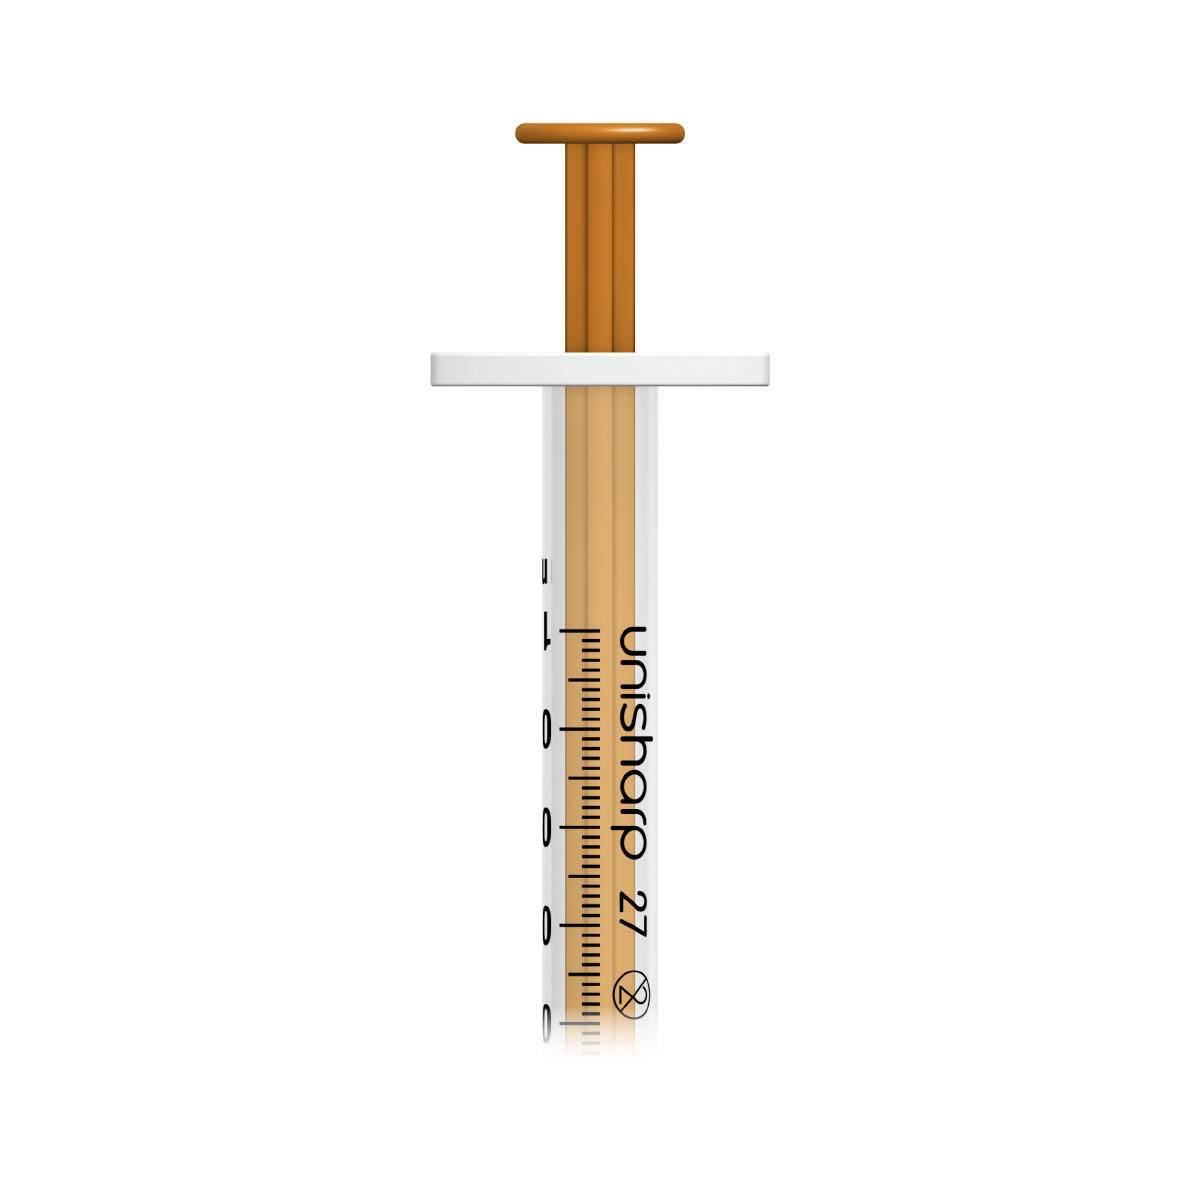 1ml 0.5 inch 27g Orange Unisharp Syringe and Needle u100